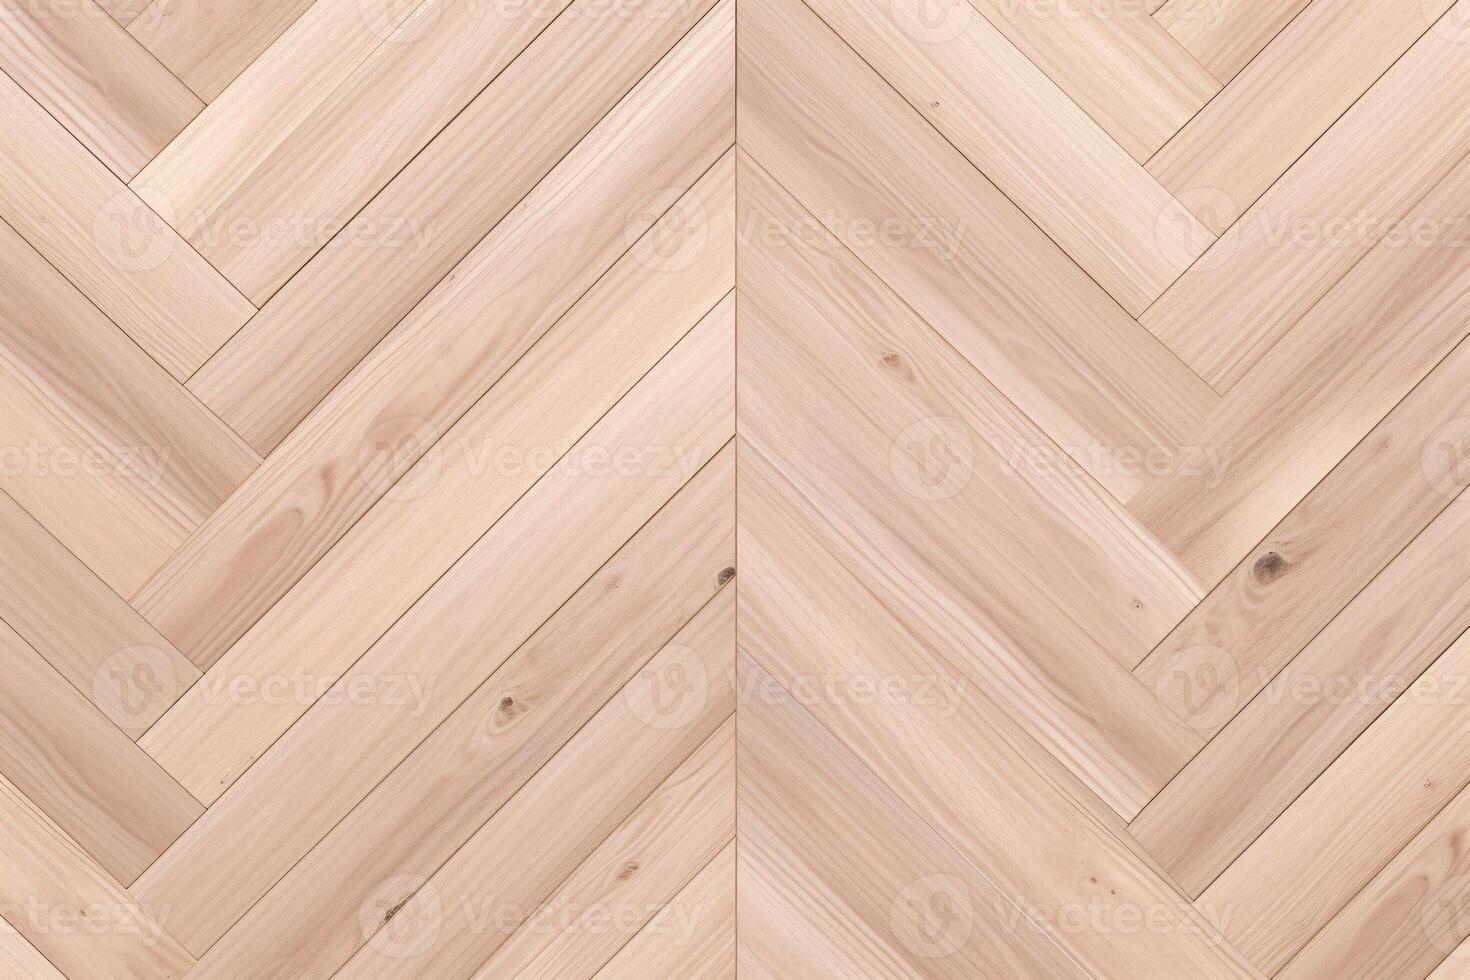 Parquet Wood Pattern Background, Wood Parquet texture, wooden parquet background, wood plank herringbone pattern, parquet floor, photo